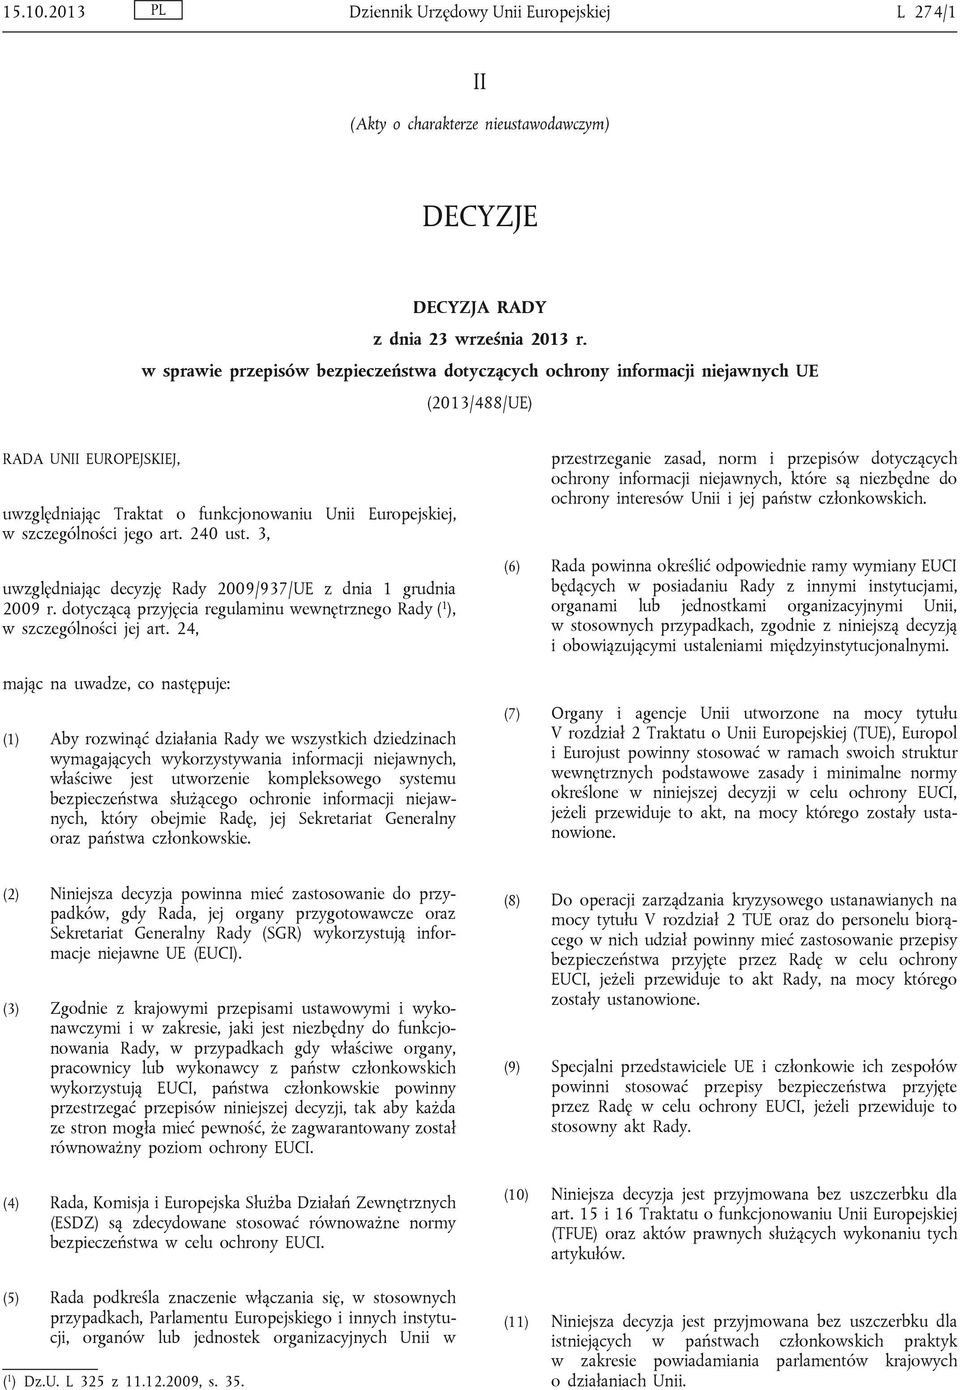 art. 240 ust. 3, uwzględniając decyzję Rady 2009/937/UE z dnia 1 grudnia 2009 r. dotyczącą przyjęcia regulaminu wewnętrznego Rady ( 1 ), w szczególności jej art.